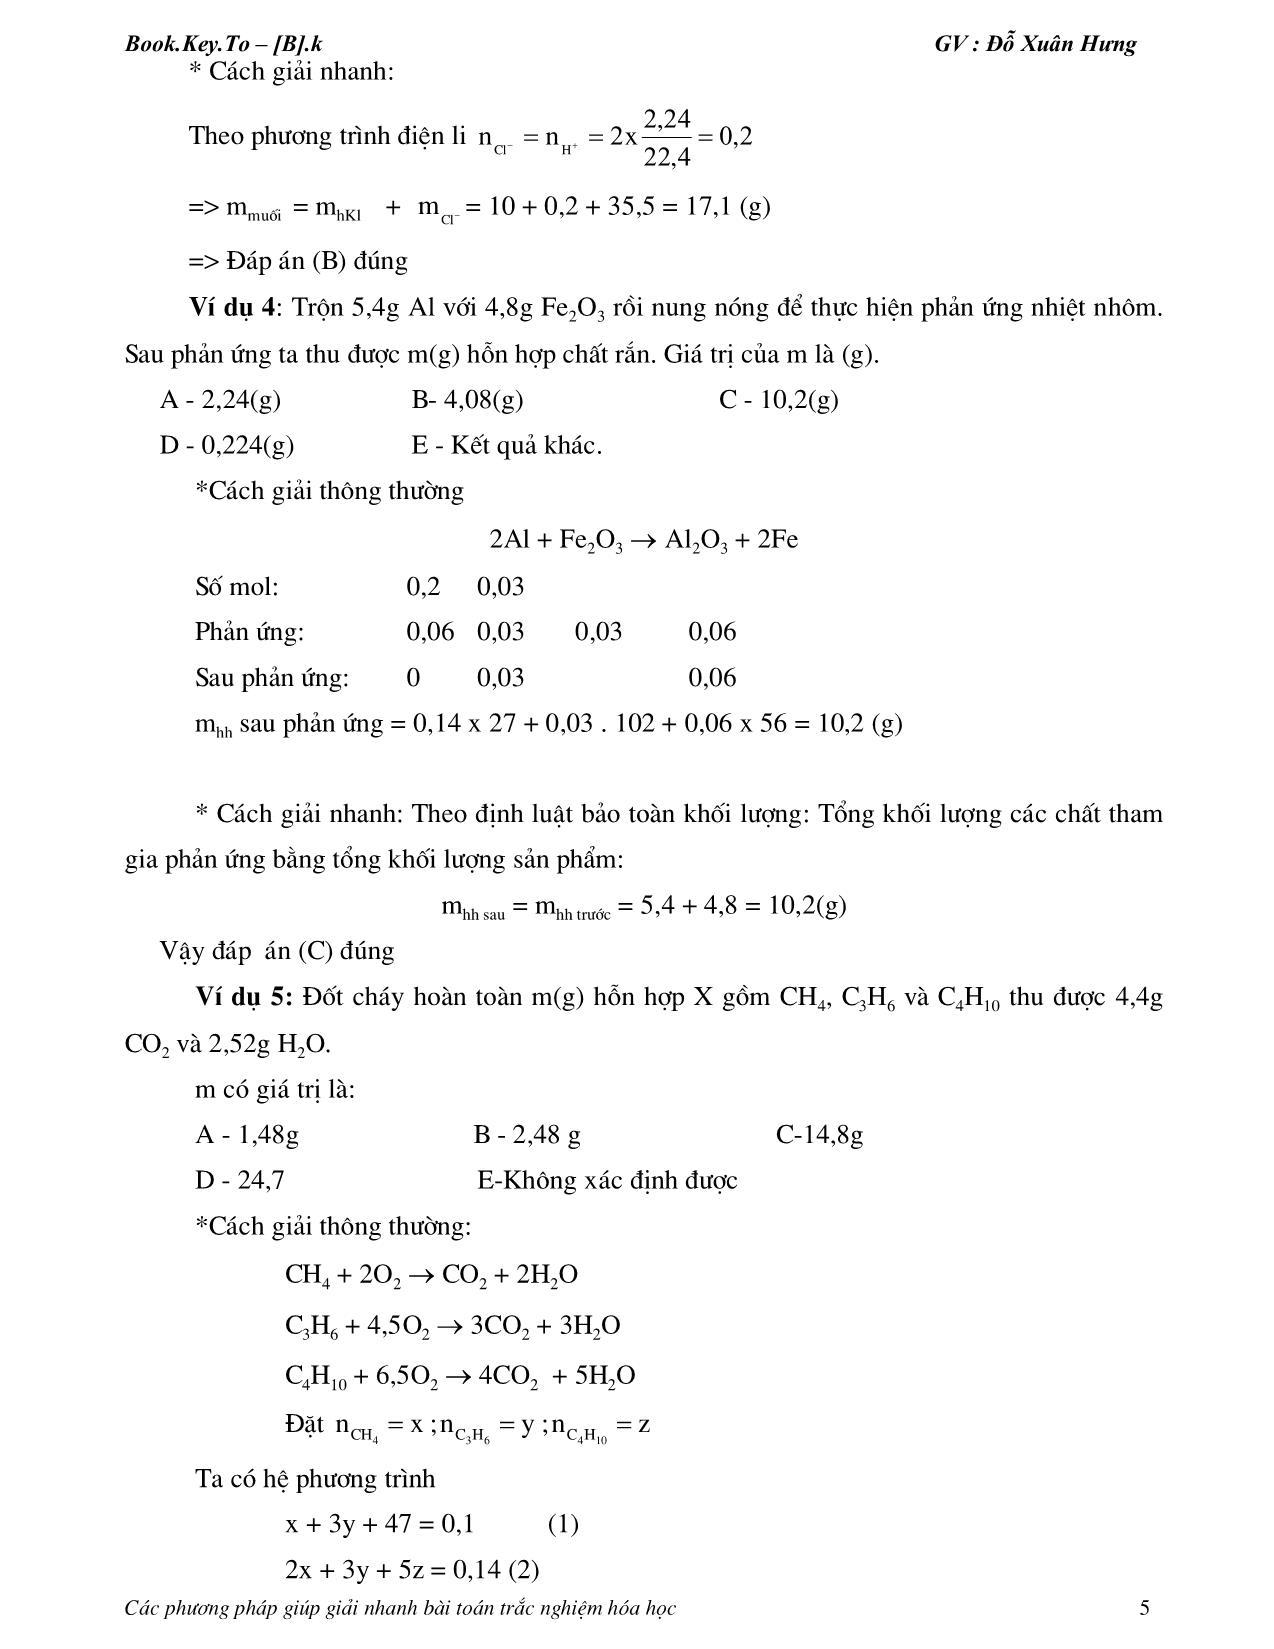 Các phương pháp giúp giải nhanh bài toán hóa học trang 5